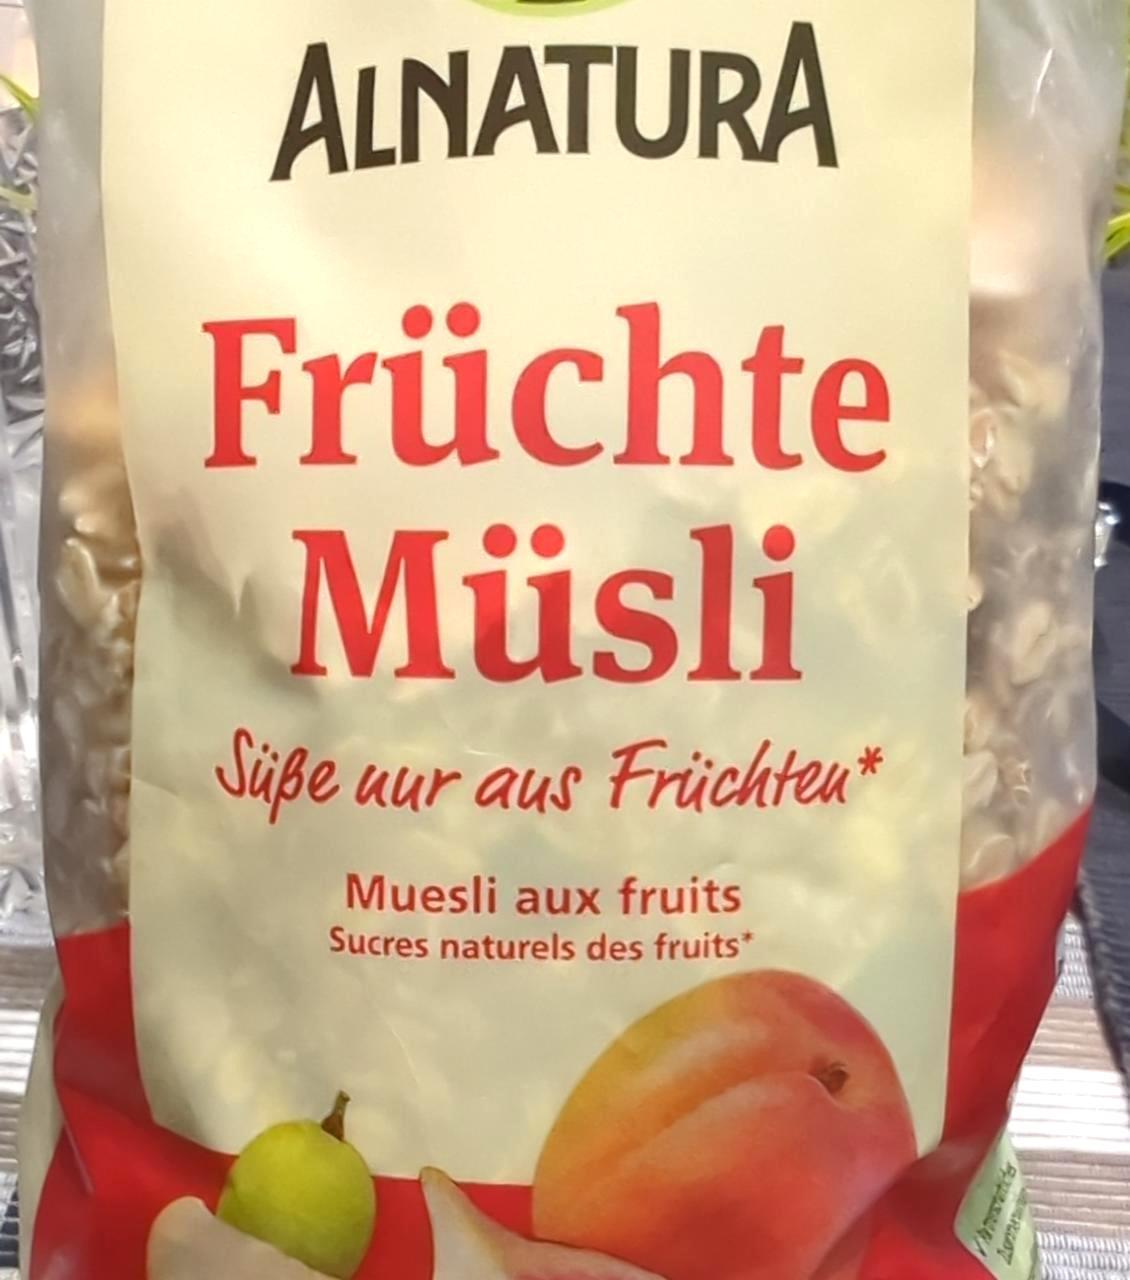 Képek - Früchte Müsli Alnatura